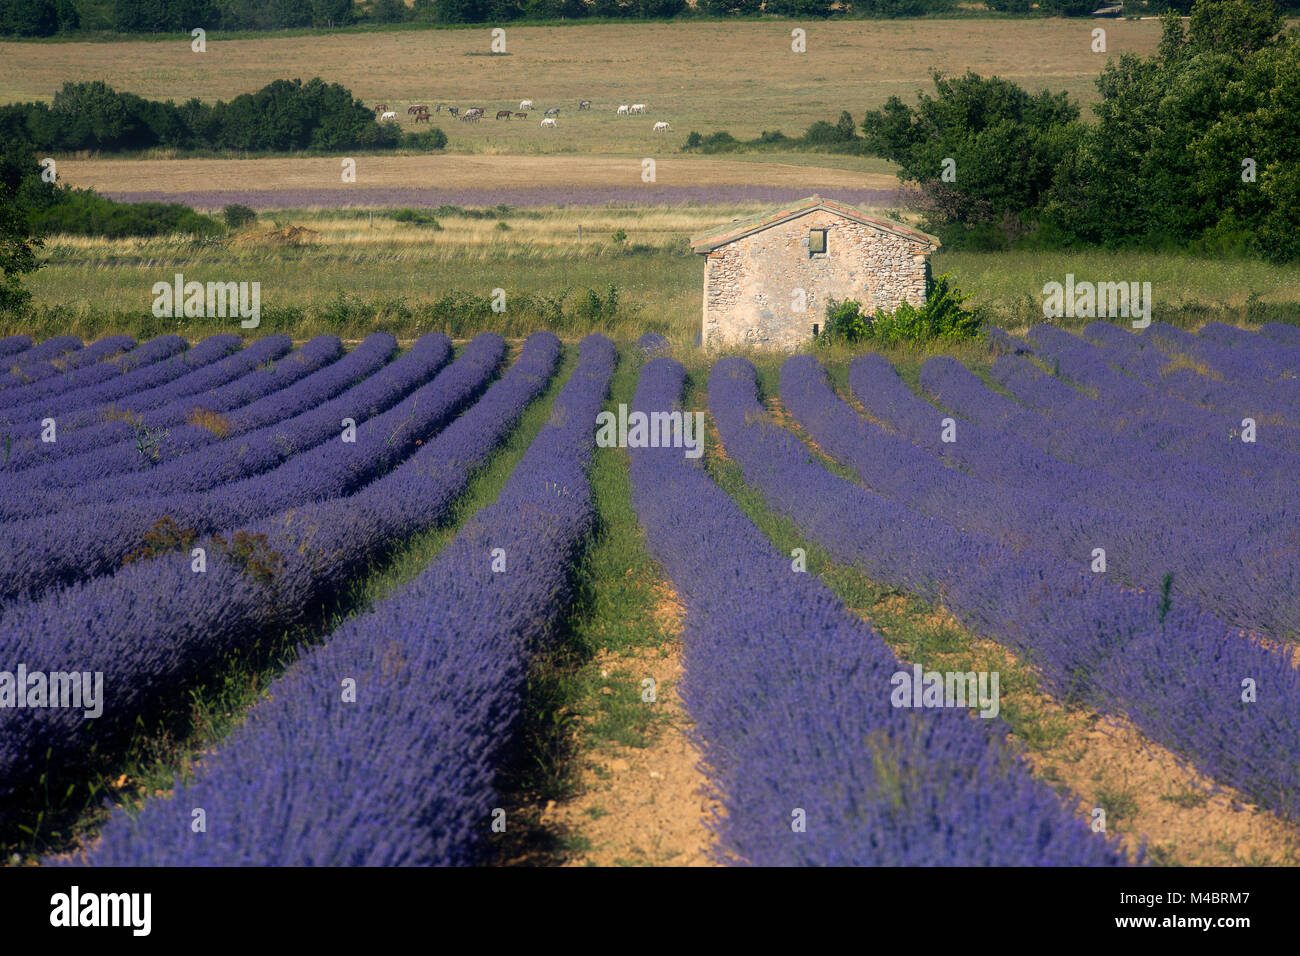 Lavender field with old stone house,Plateau de Valensole,Département Alpes-de-Haute-Provence,France Stock Photo